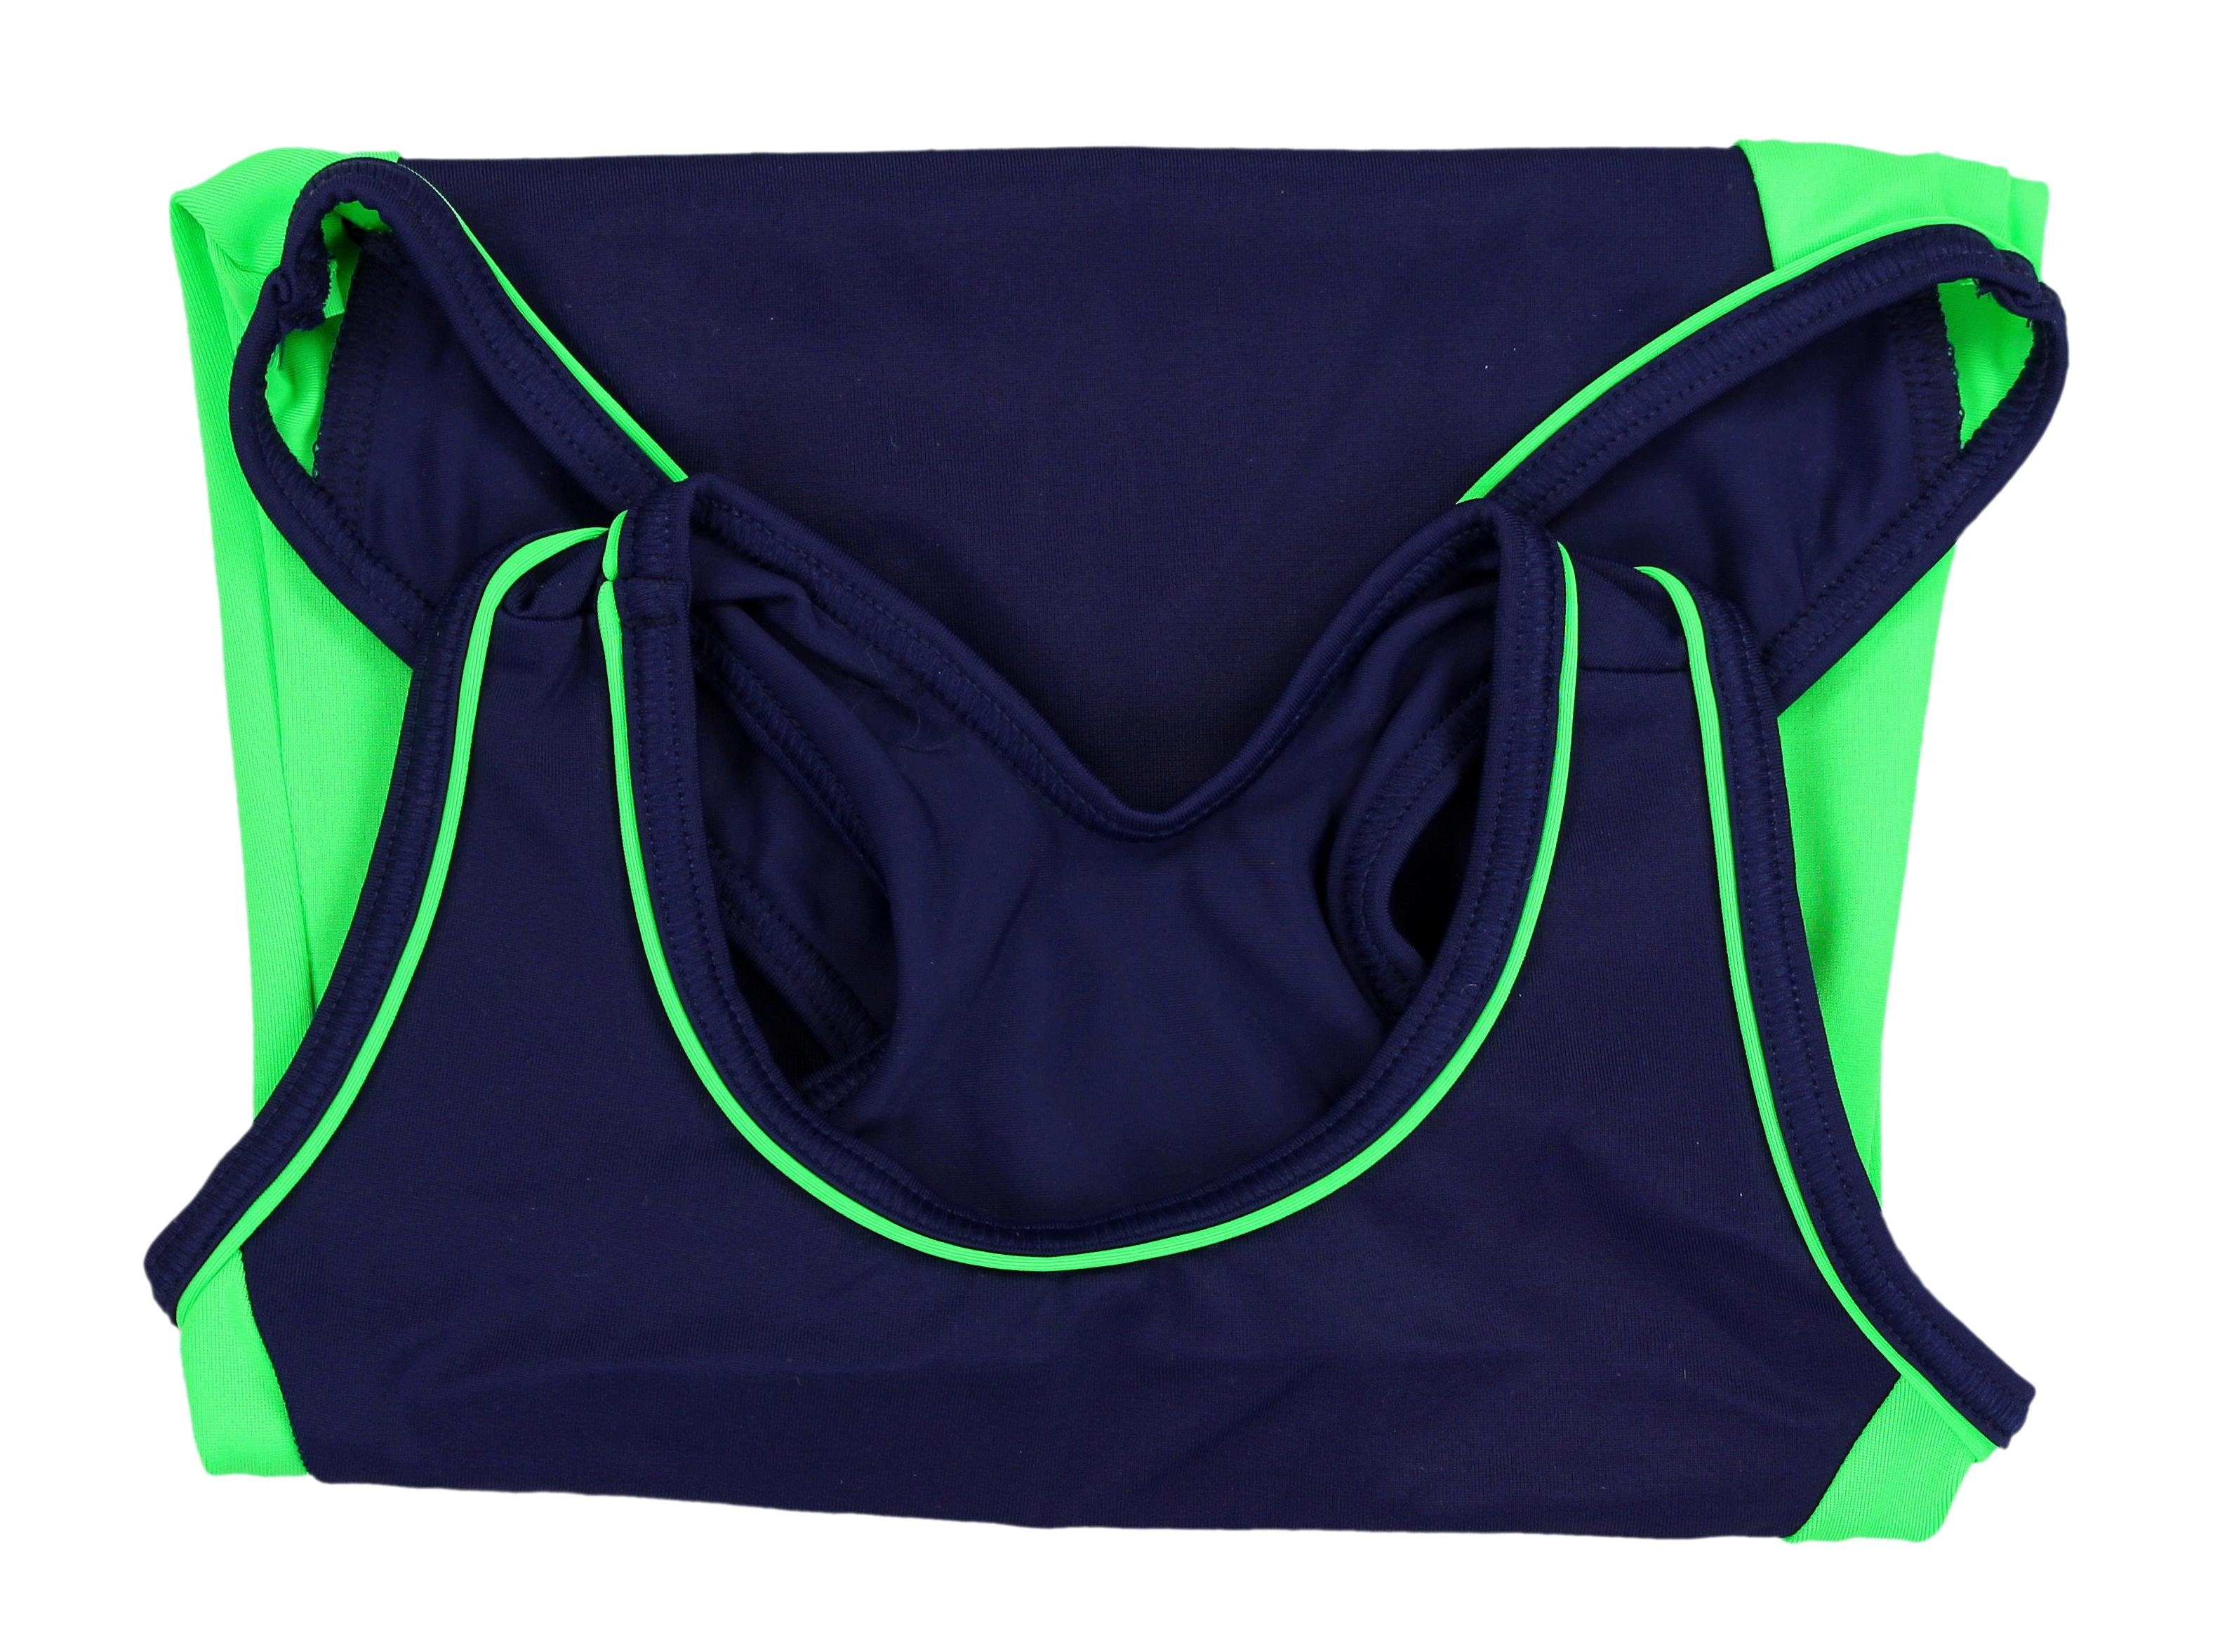 Schwimmanzug mit Grün Dunkelblau Sportlich Aquarti / Schwimmanzug Racerback Aquarti Badeanzug Mädchen